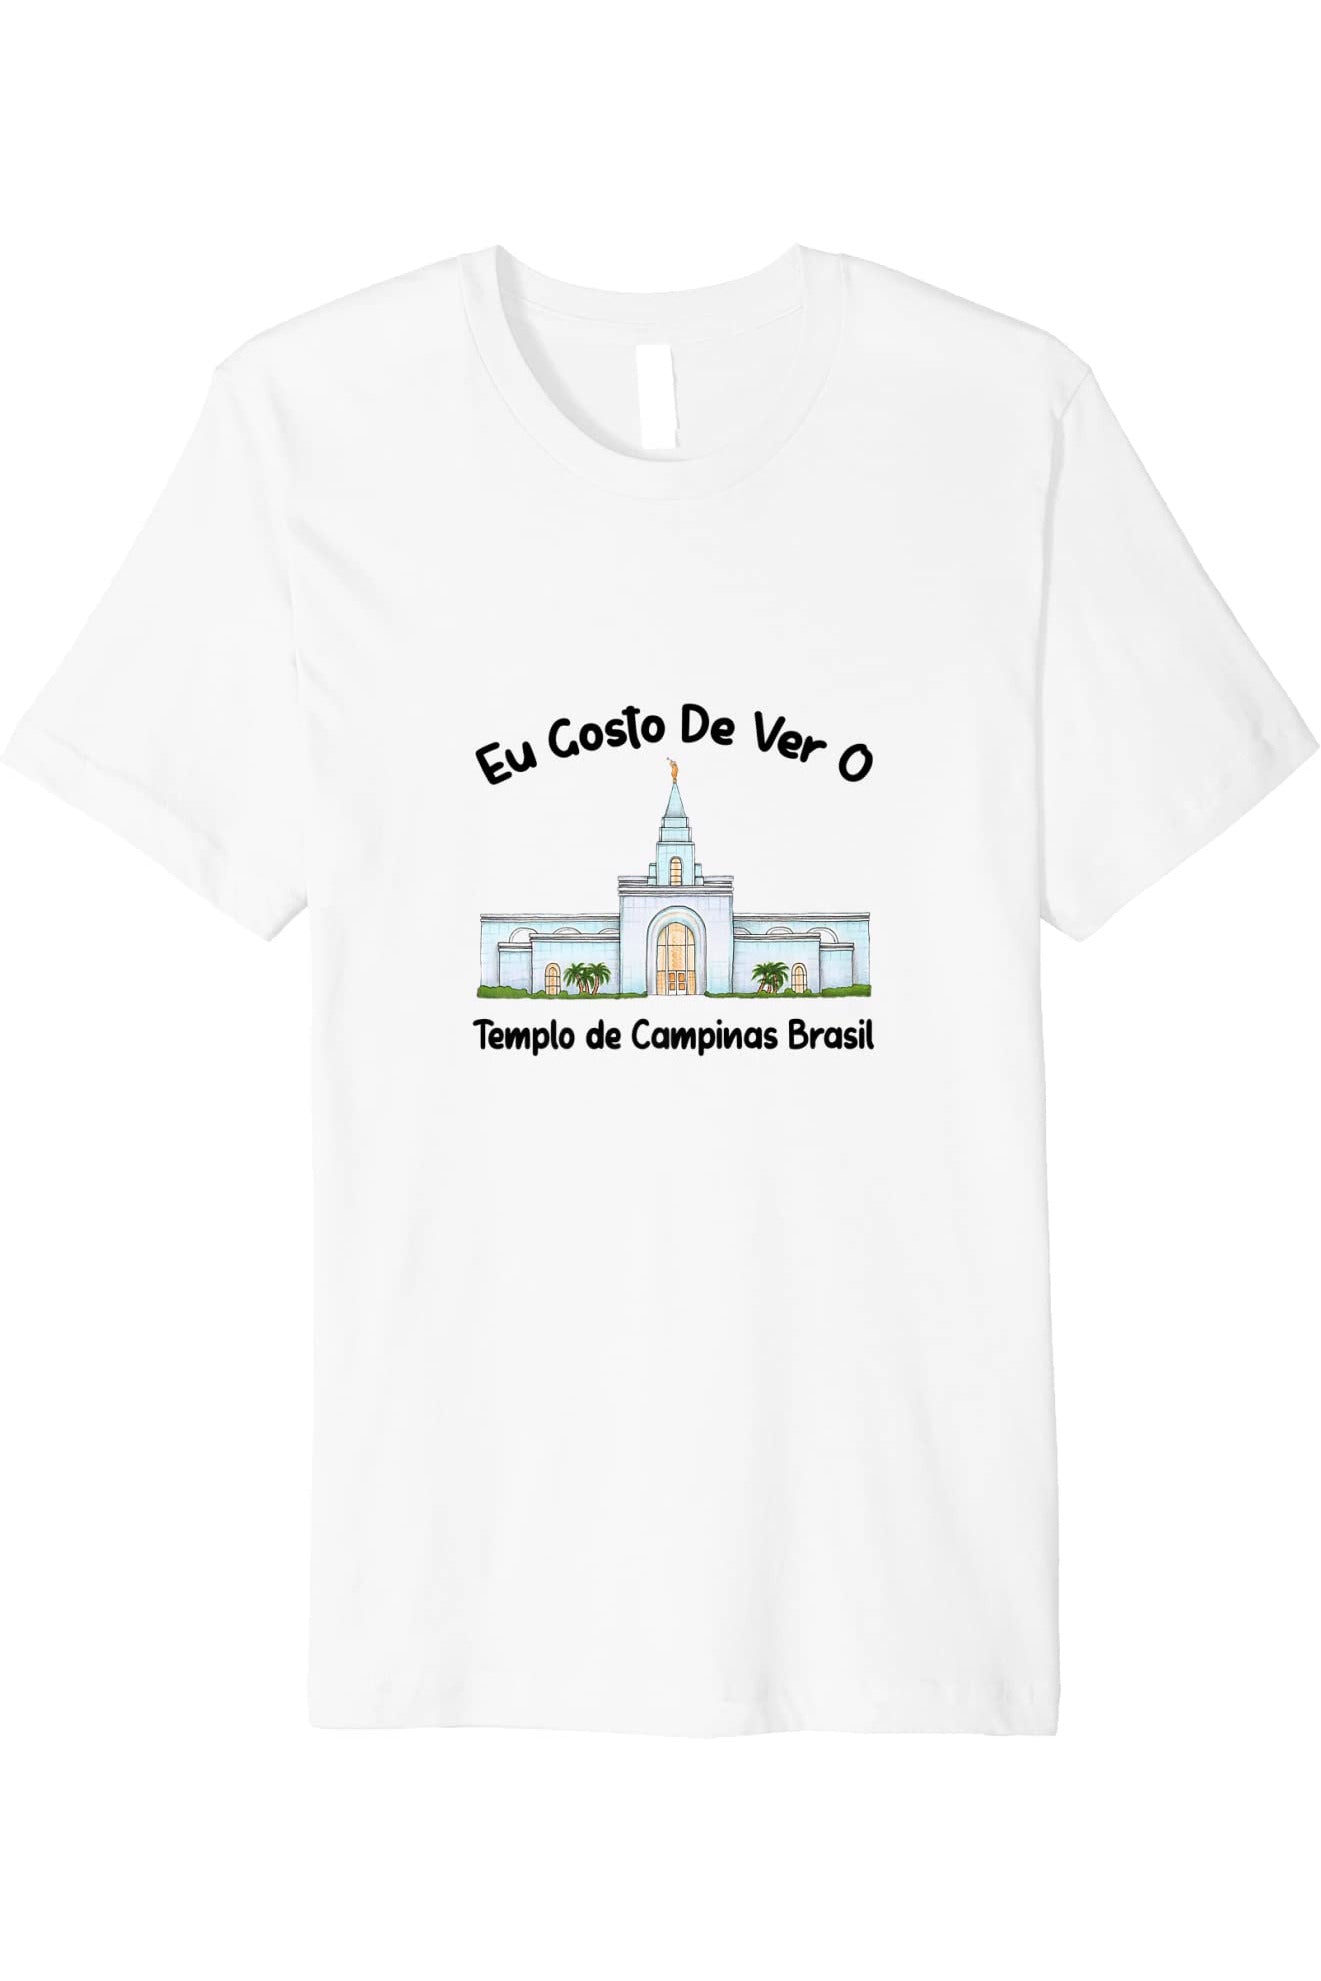 Templo de Manaus Brasil T-Shirt - Premium - Primary Style (Portuguese) US